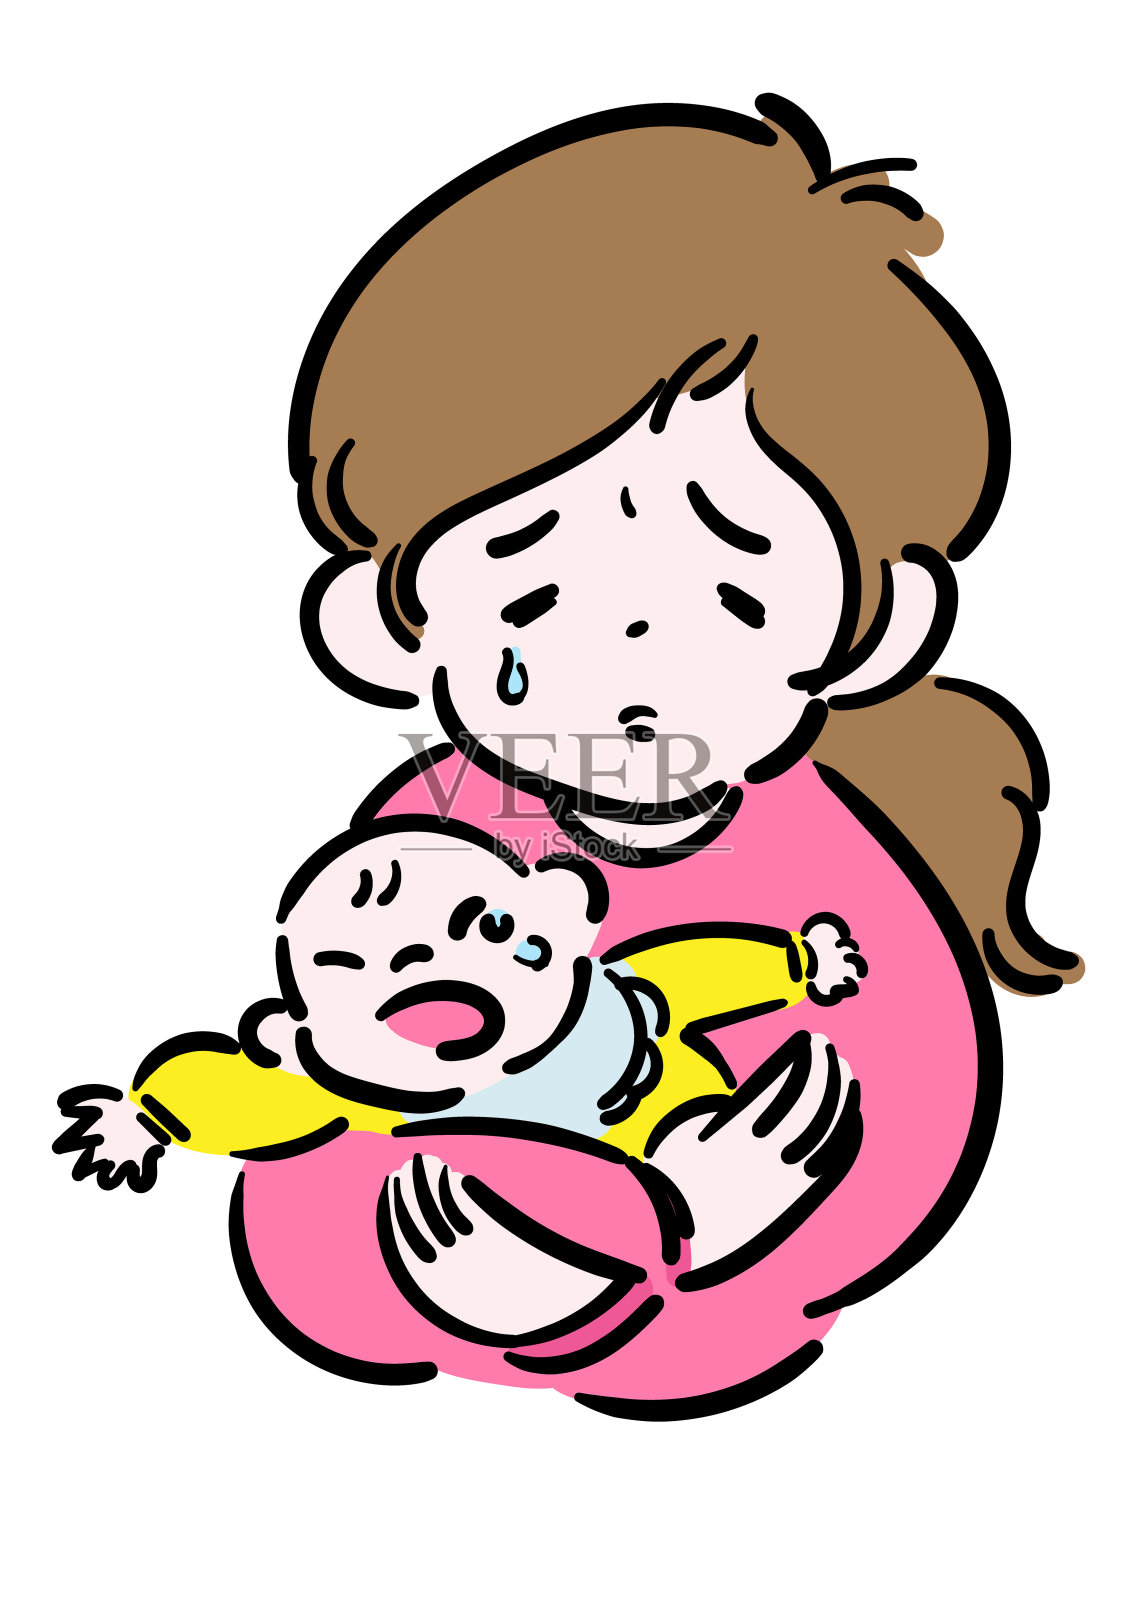 哭闹的婴儿和疲惫的母亲设计元素图片